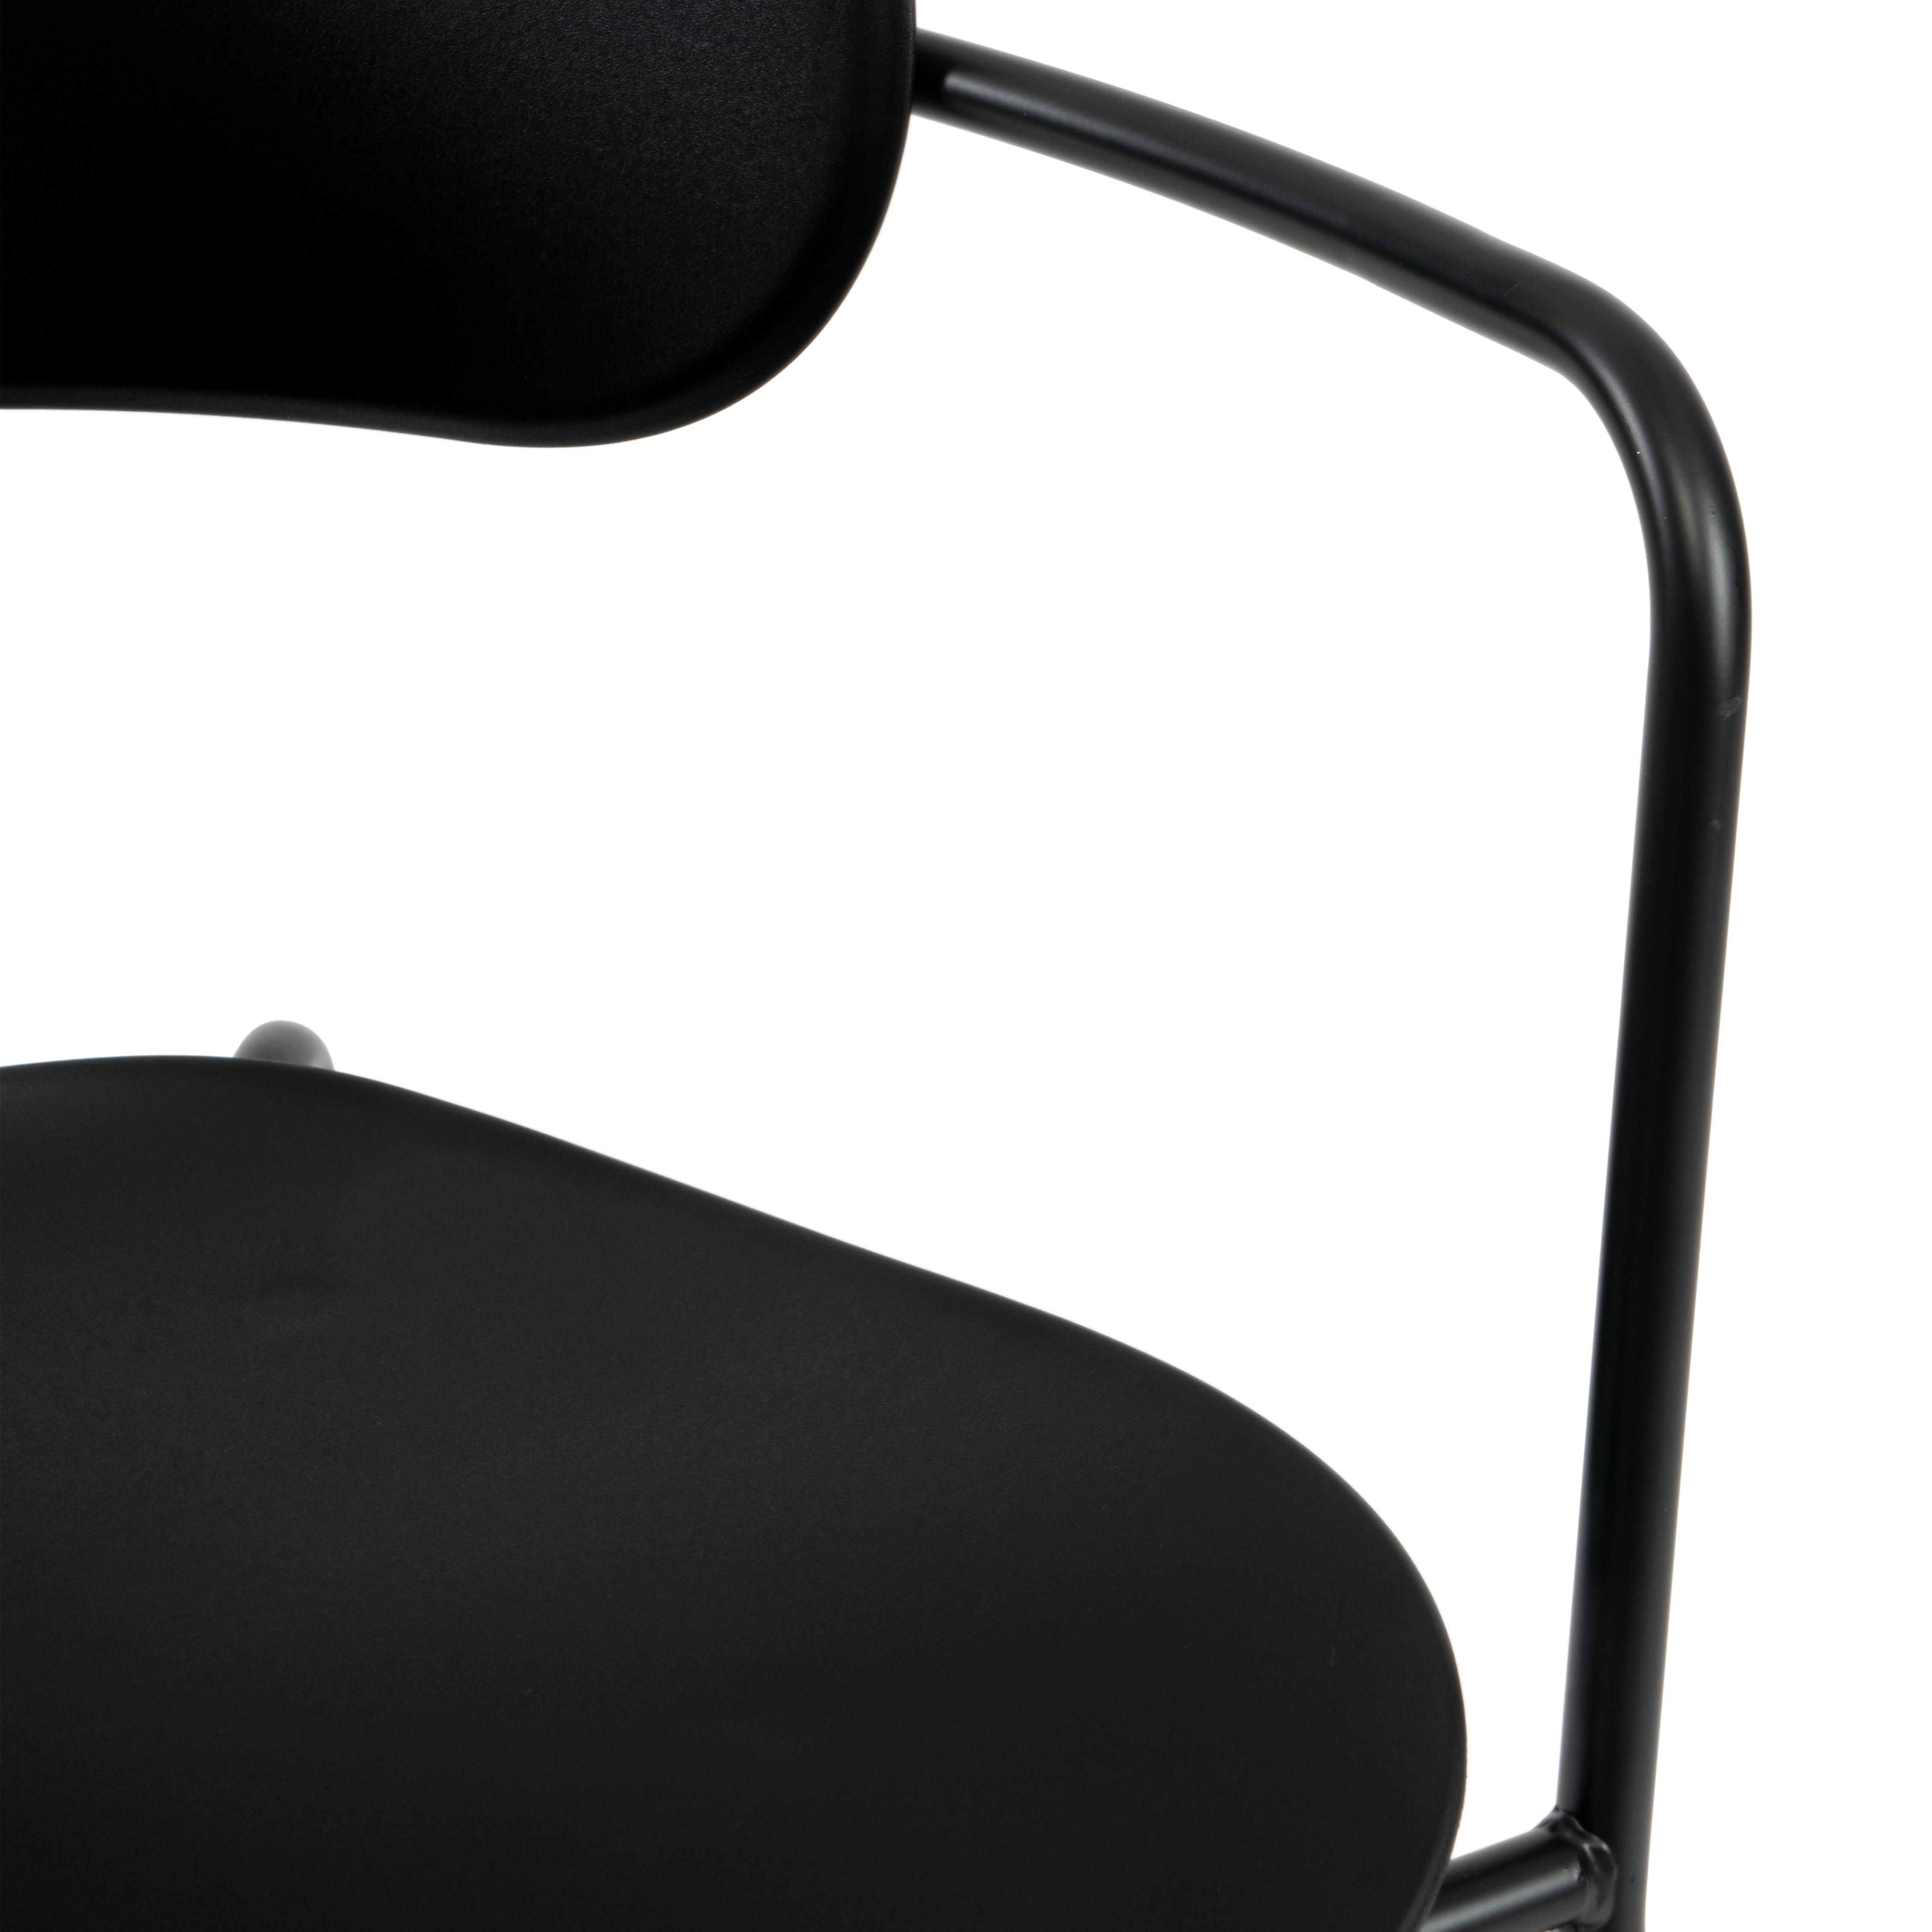 Кресло VAN HALLEN (mod. 2433) пластик/металл, 54,5х53,5х76 см, высота до сиденья 46 см, черный/черный